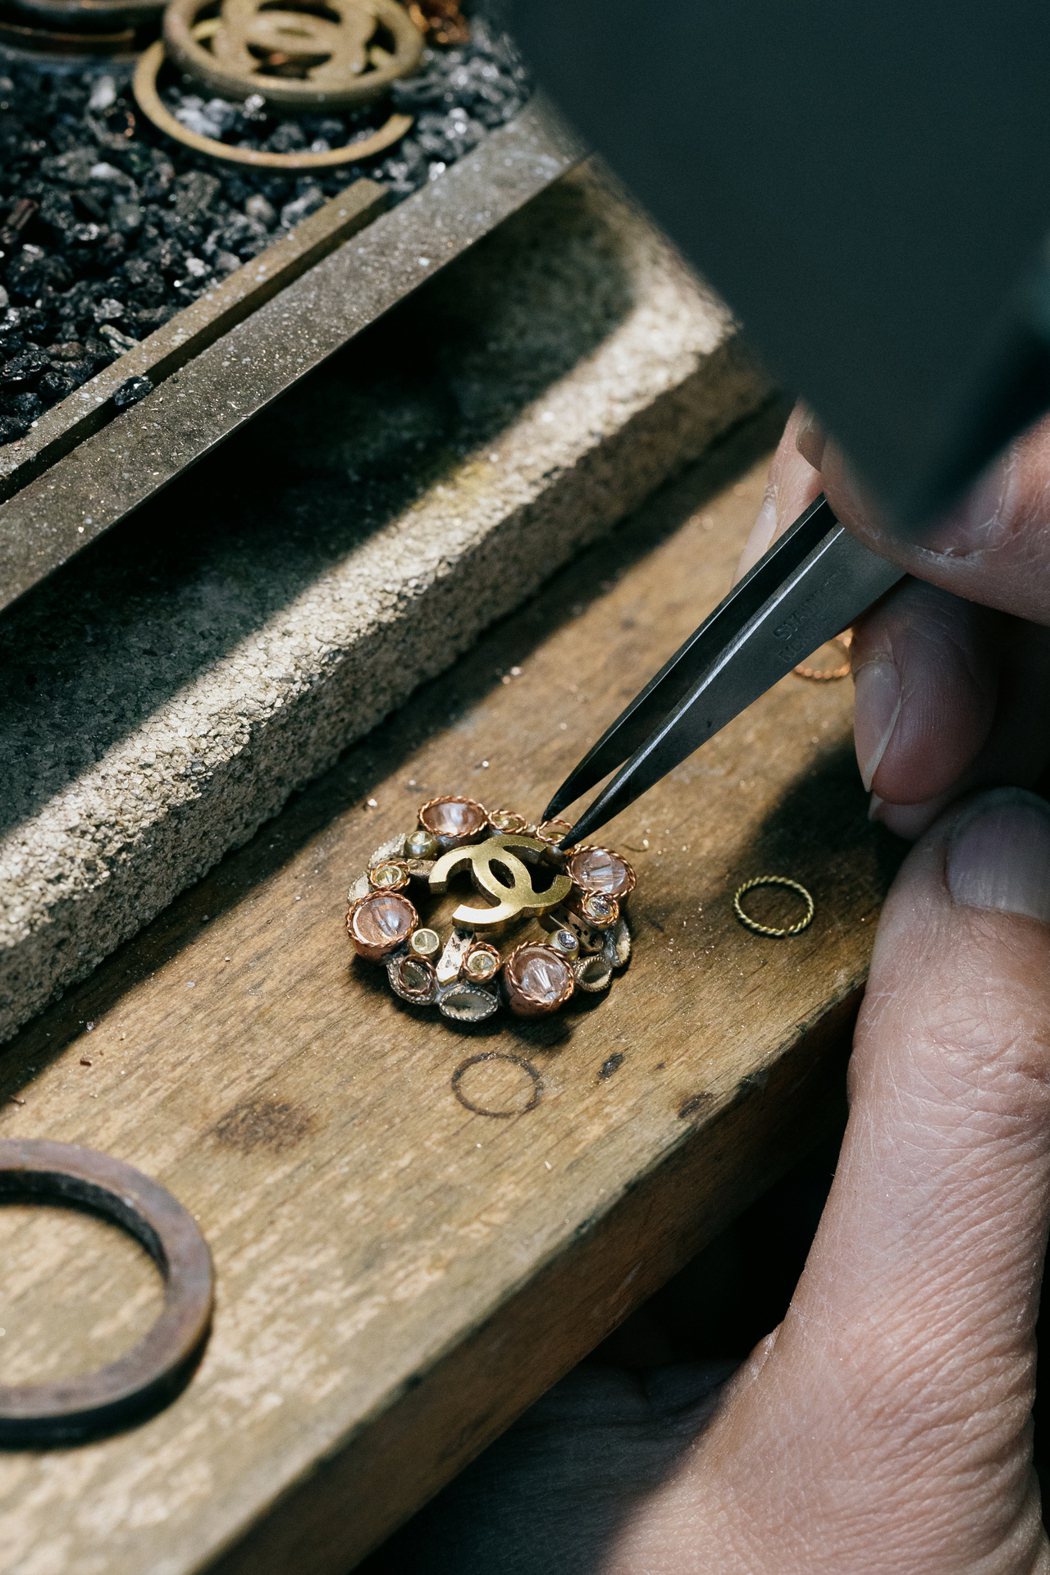 Desrues珠寶配飾工坊專為香奈兒服飾系列設計珠寶鈕扣和腰帶扣、包扣與珍貴服飾...